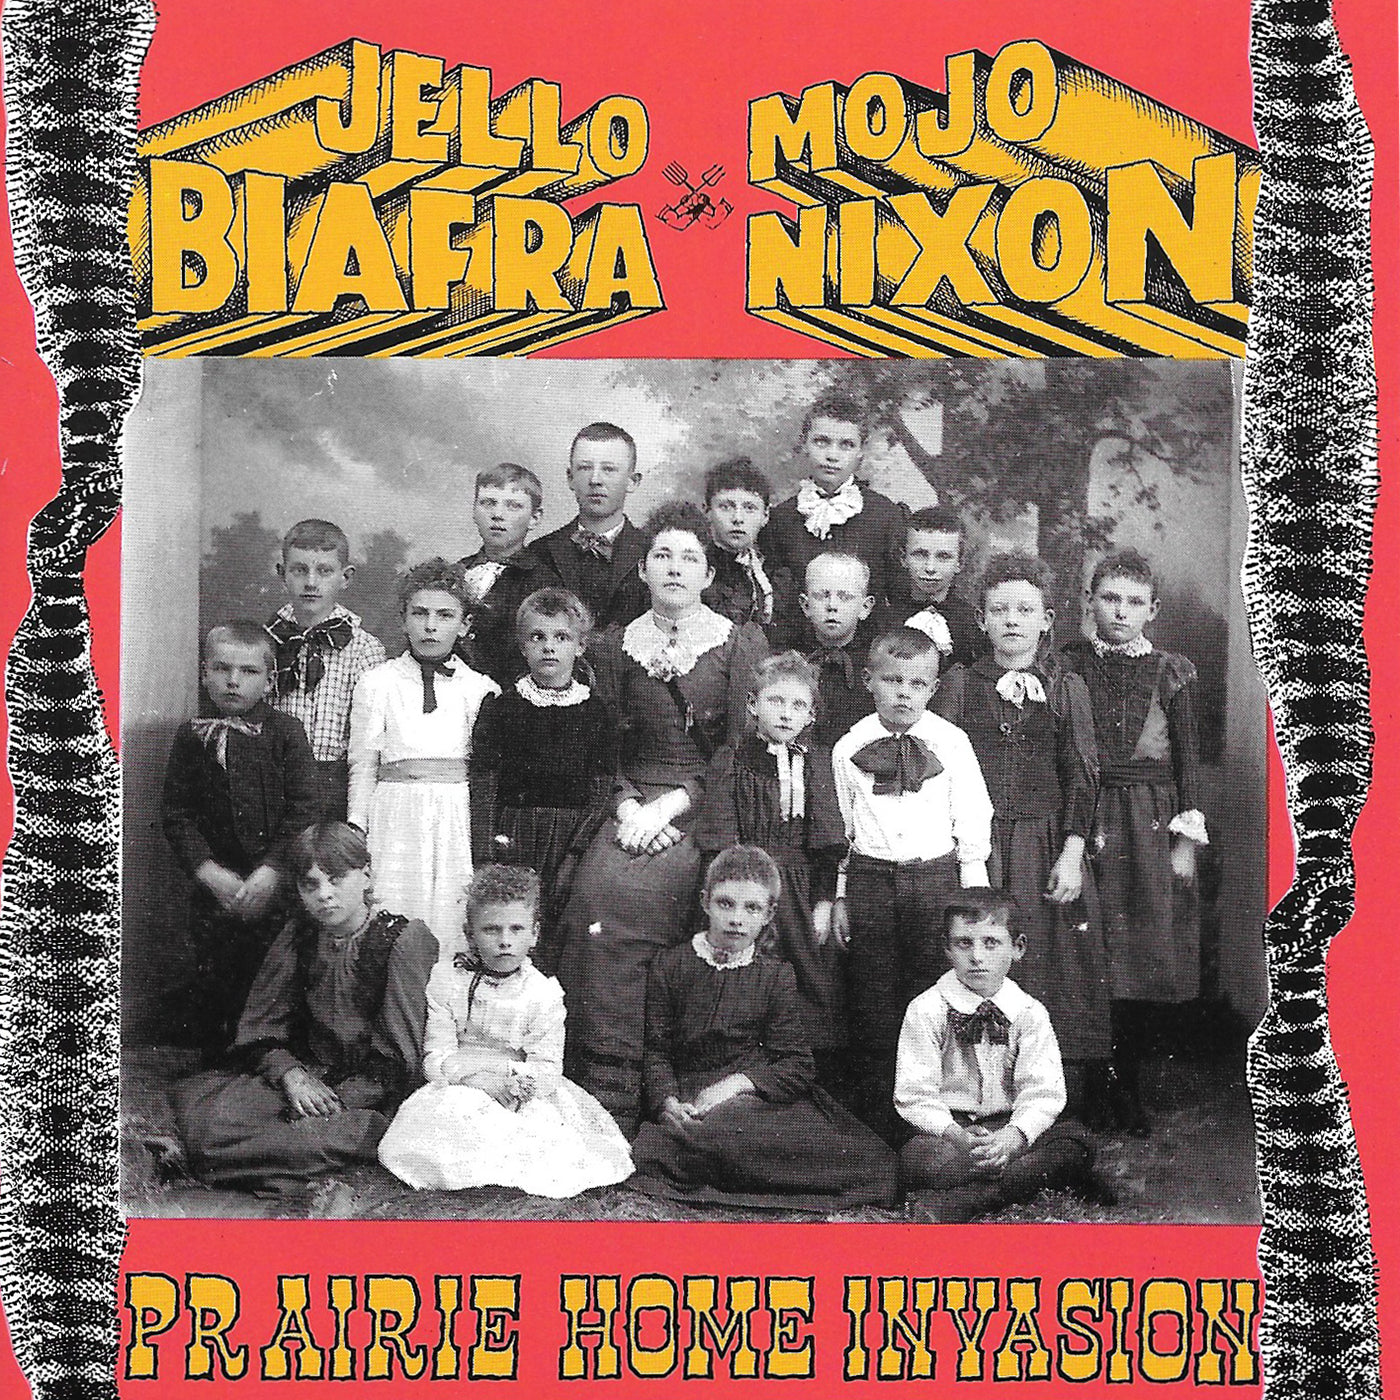 v137 - Jello Biafra & Mojo Nixon - "Prairie Home Invasion"